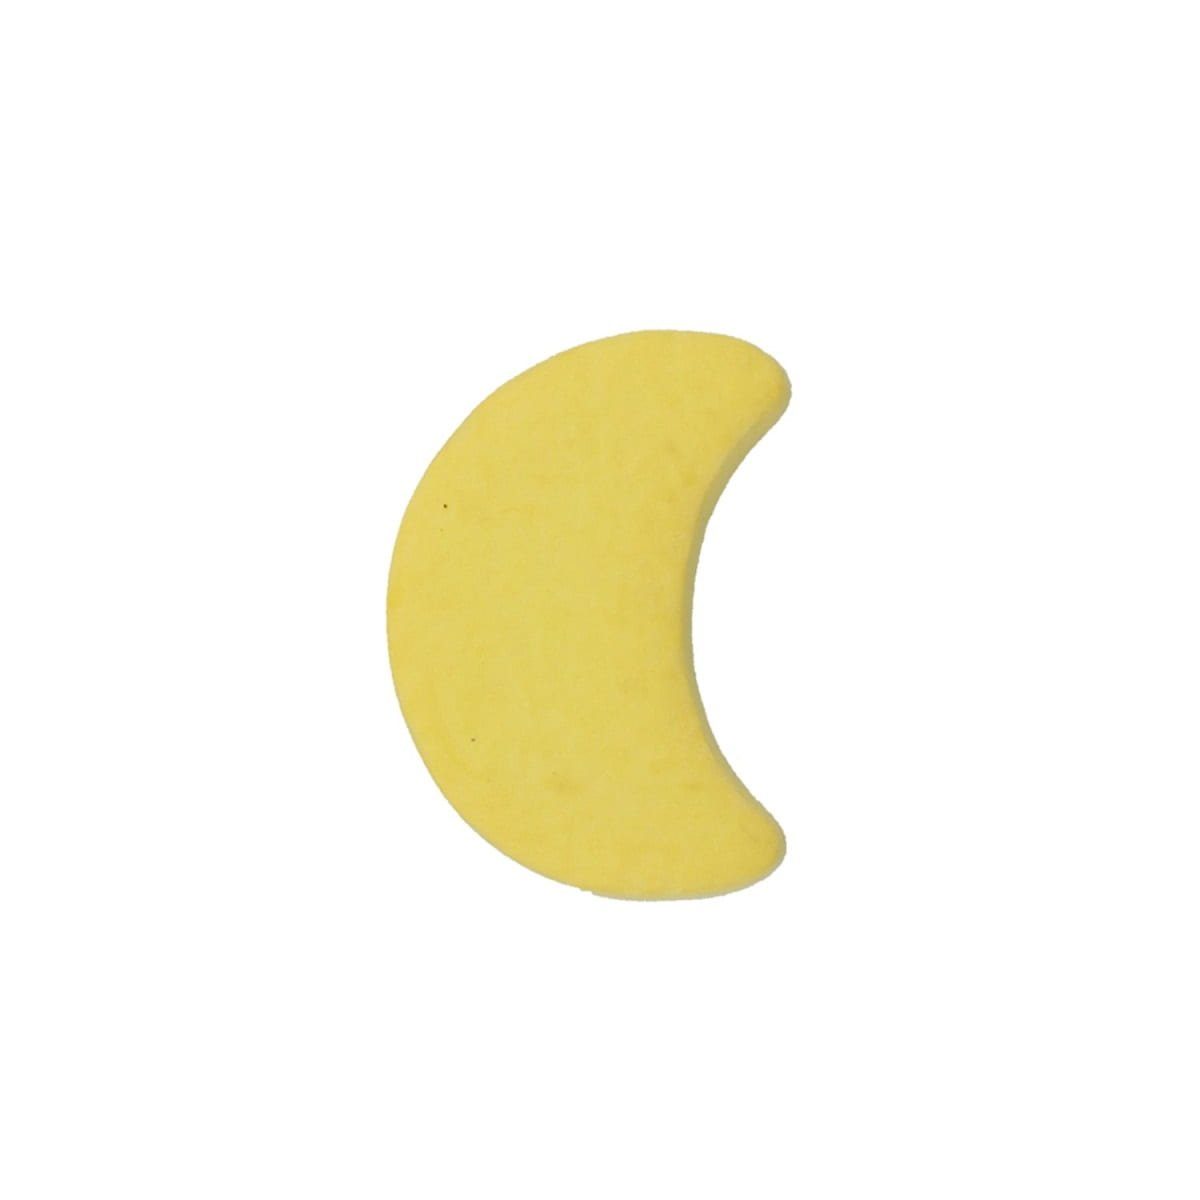 MS Beschläge Türbeschlag Möbelknopf Kindermöbelknopf Mond Gelber Modell